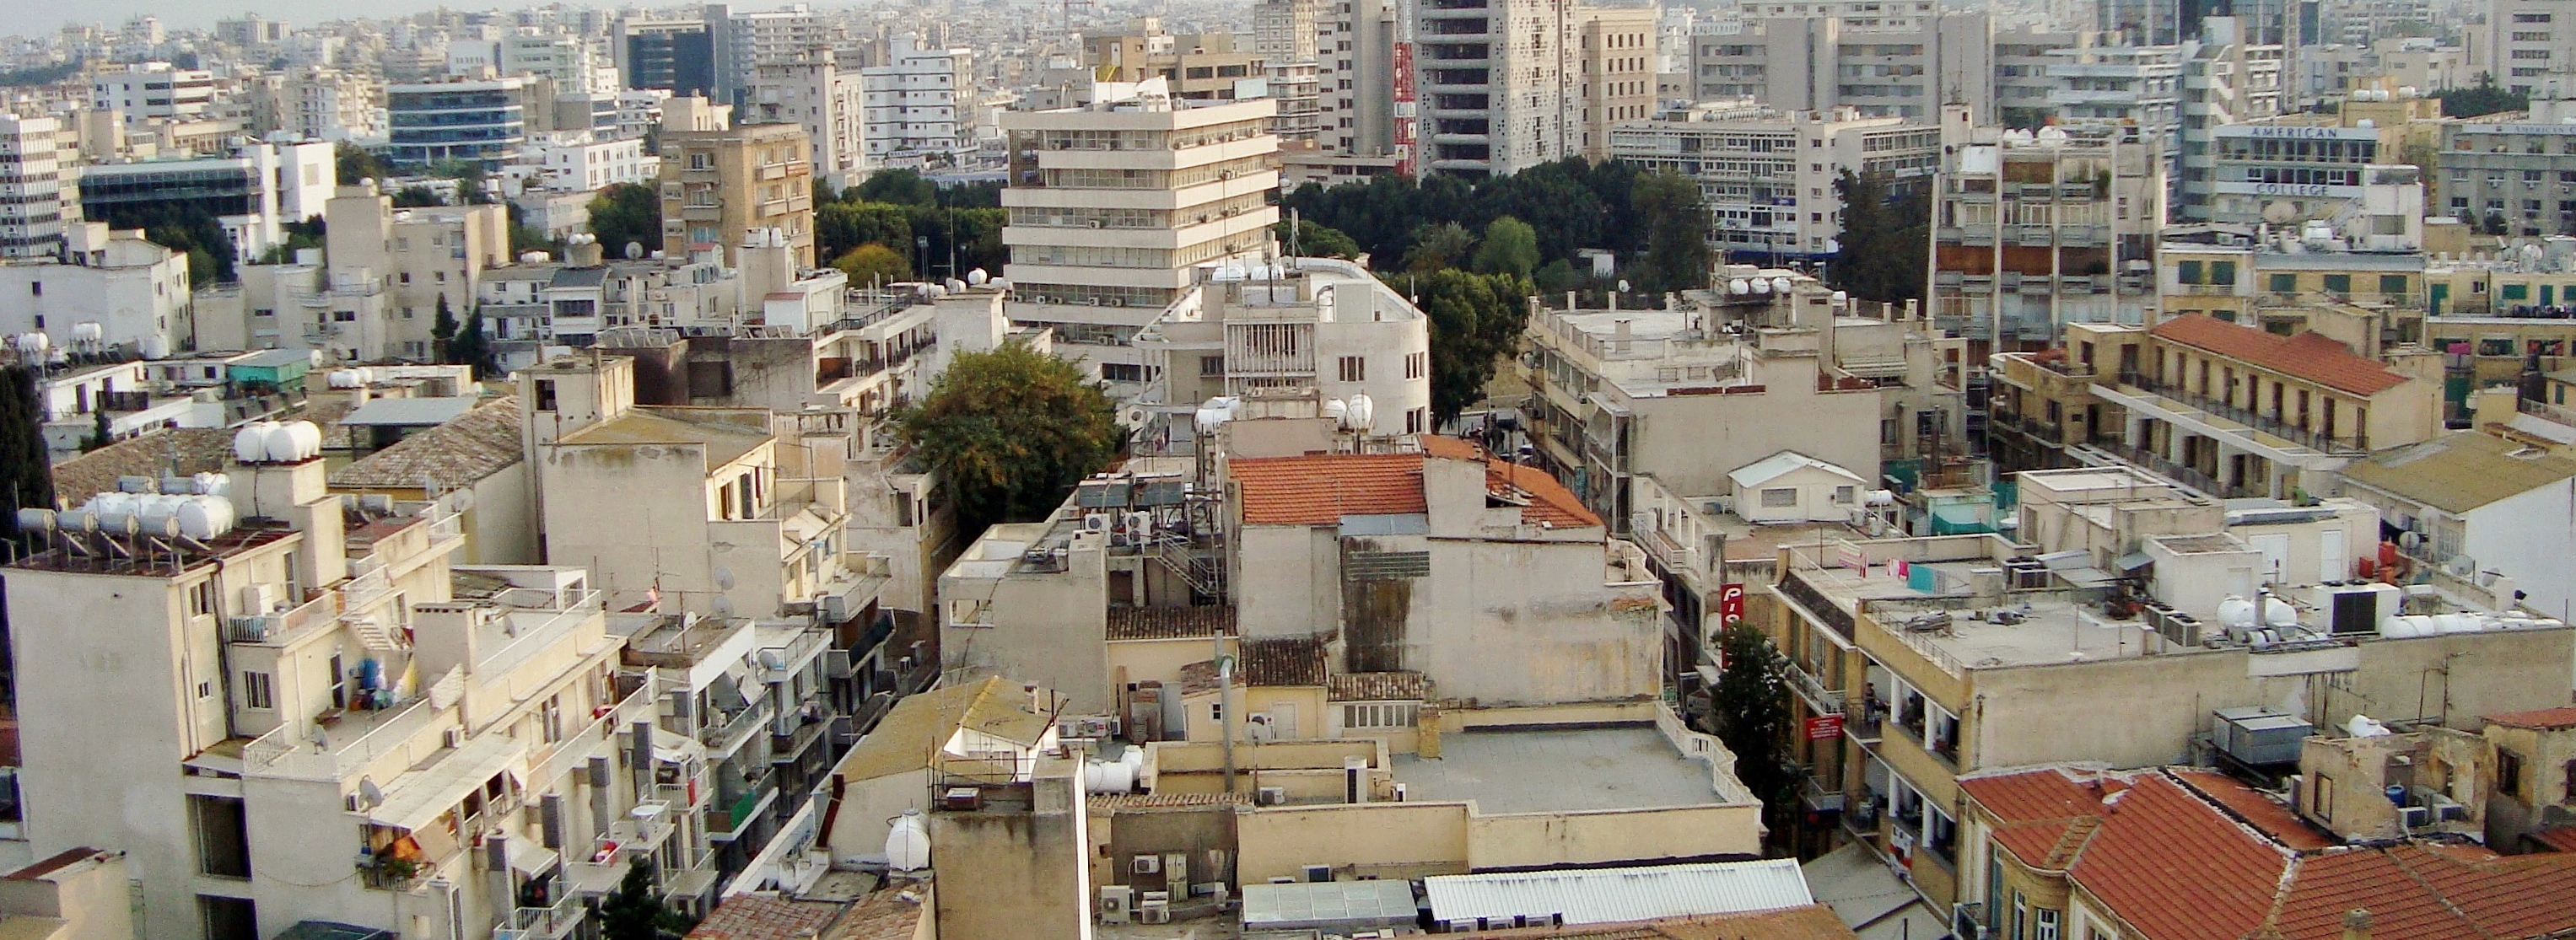 Nicosia panorama in evening